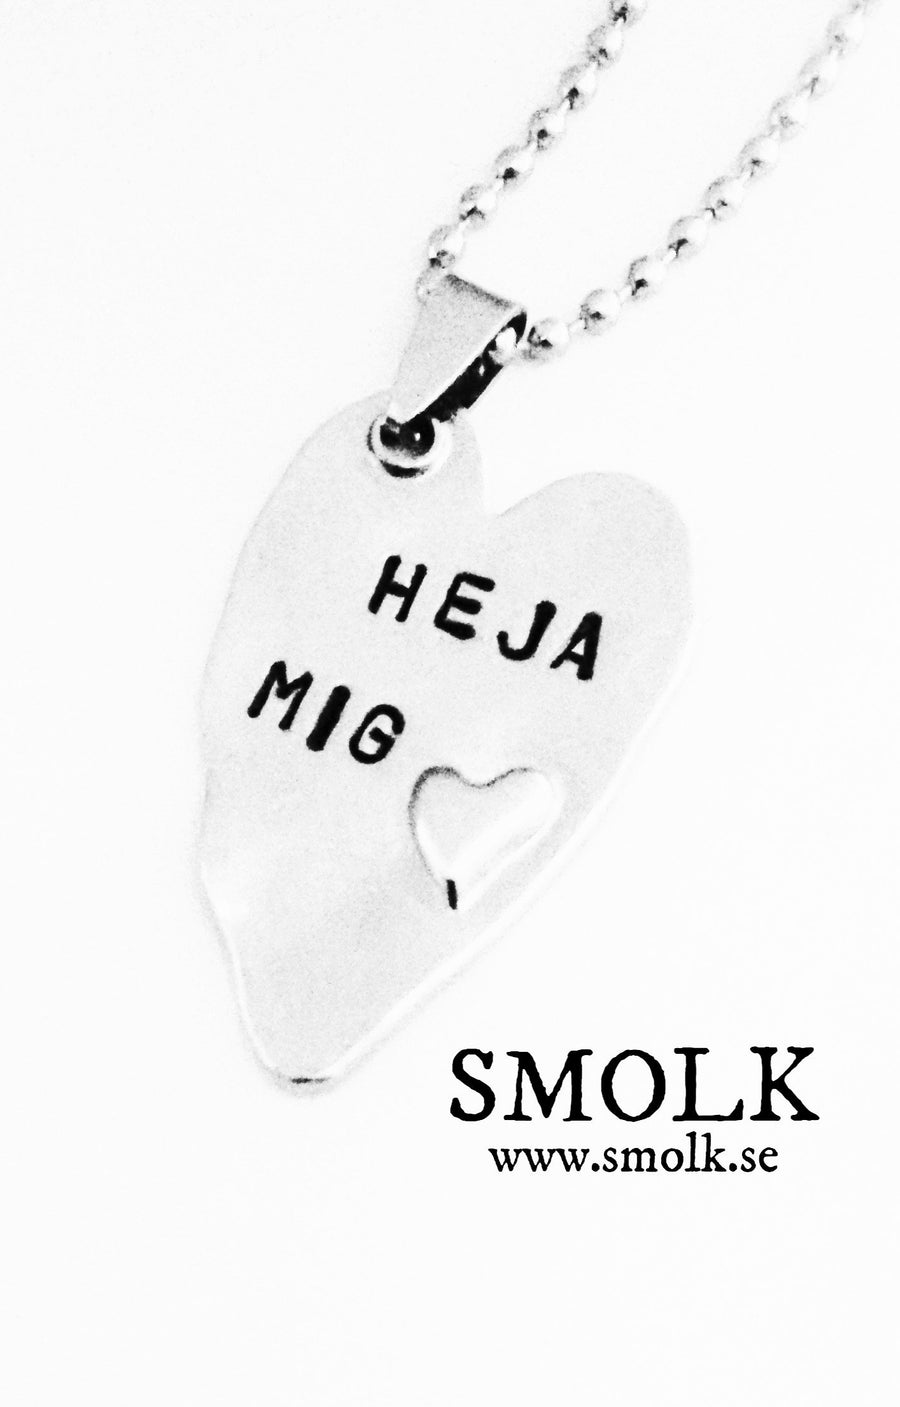 HEJA MIG - Smolk Sweden